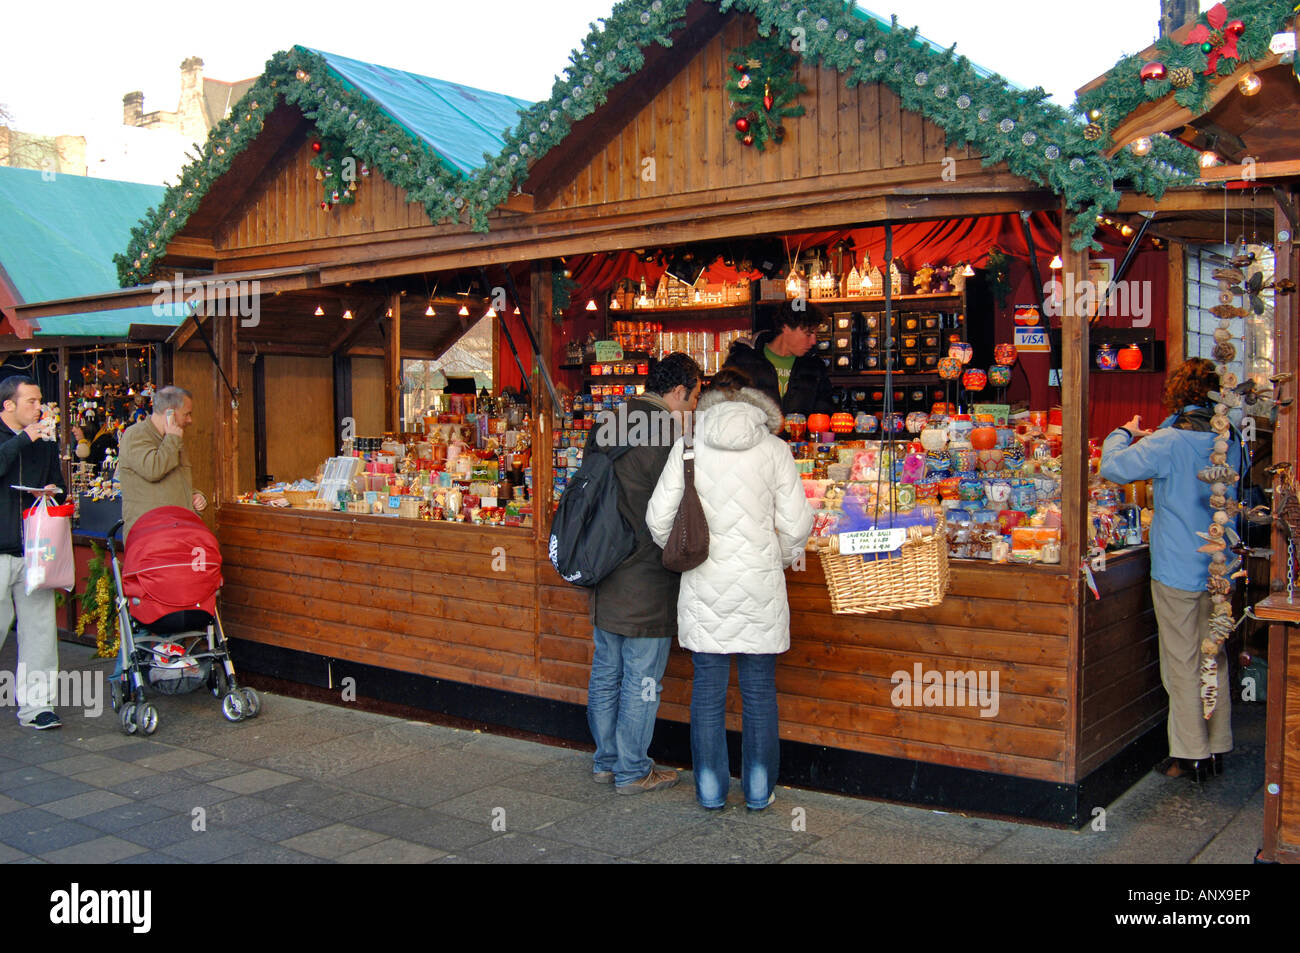 Princess Street Gardens Marktstände an Weihnachten Schottland. Stockfoto